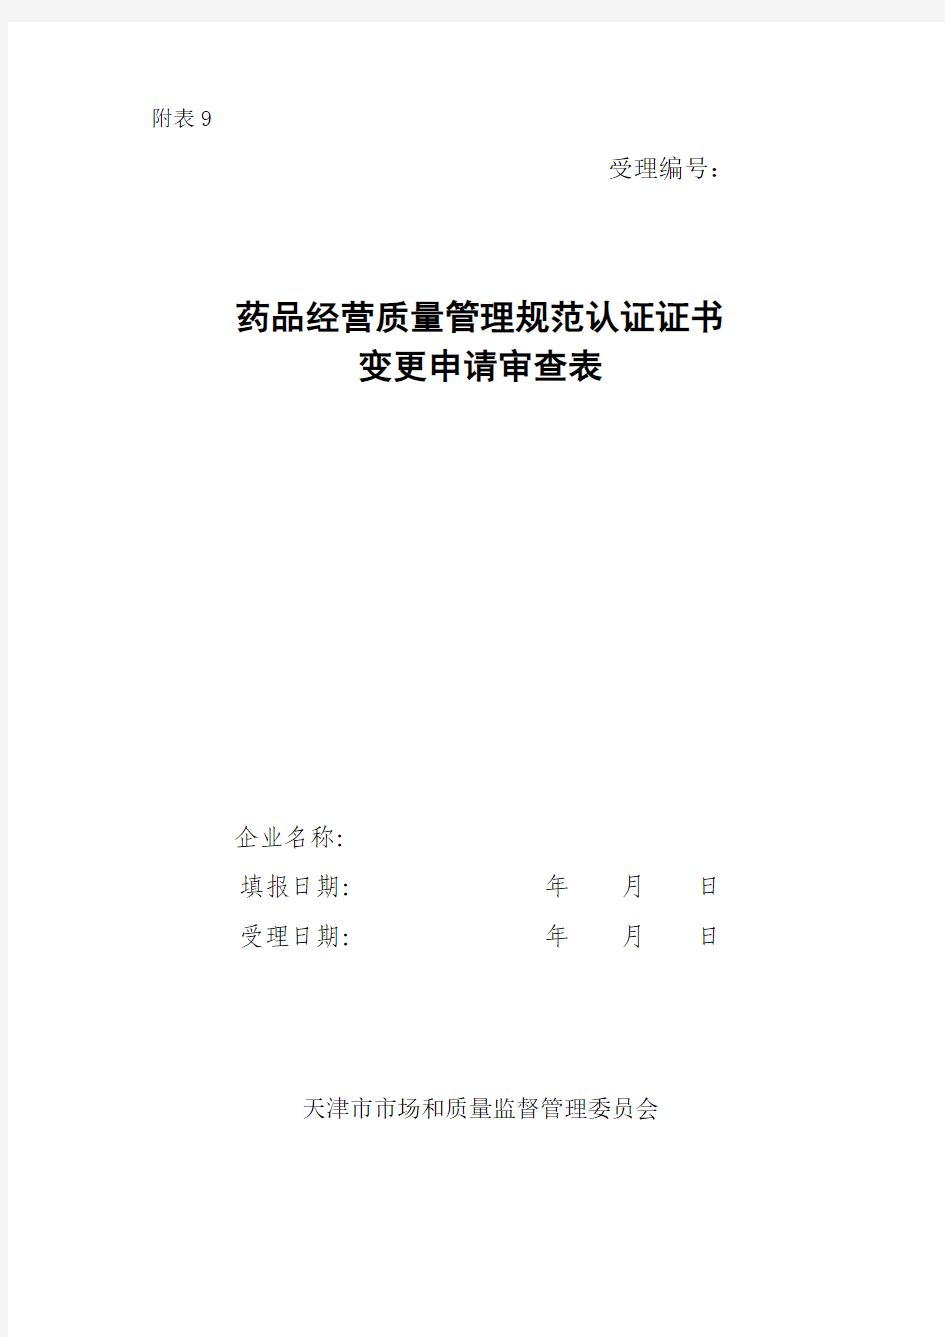 天津市药品经营质量管理规范认证证书(gsp)变更申请审查表